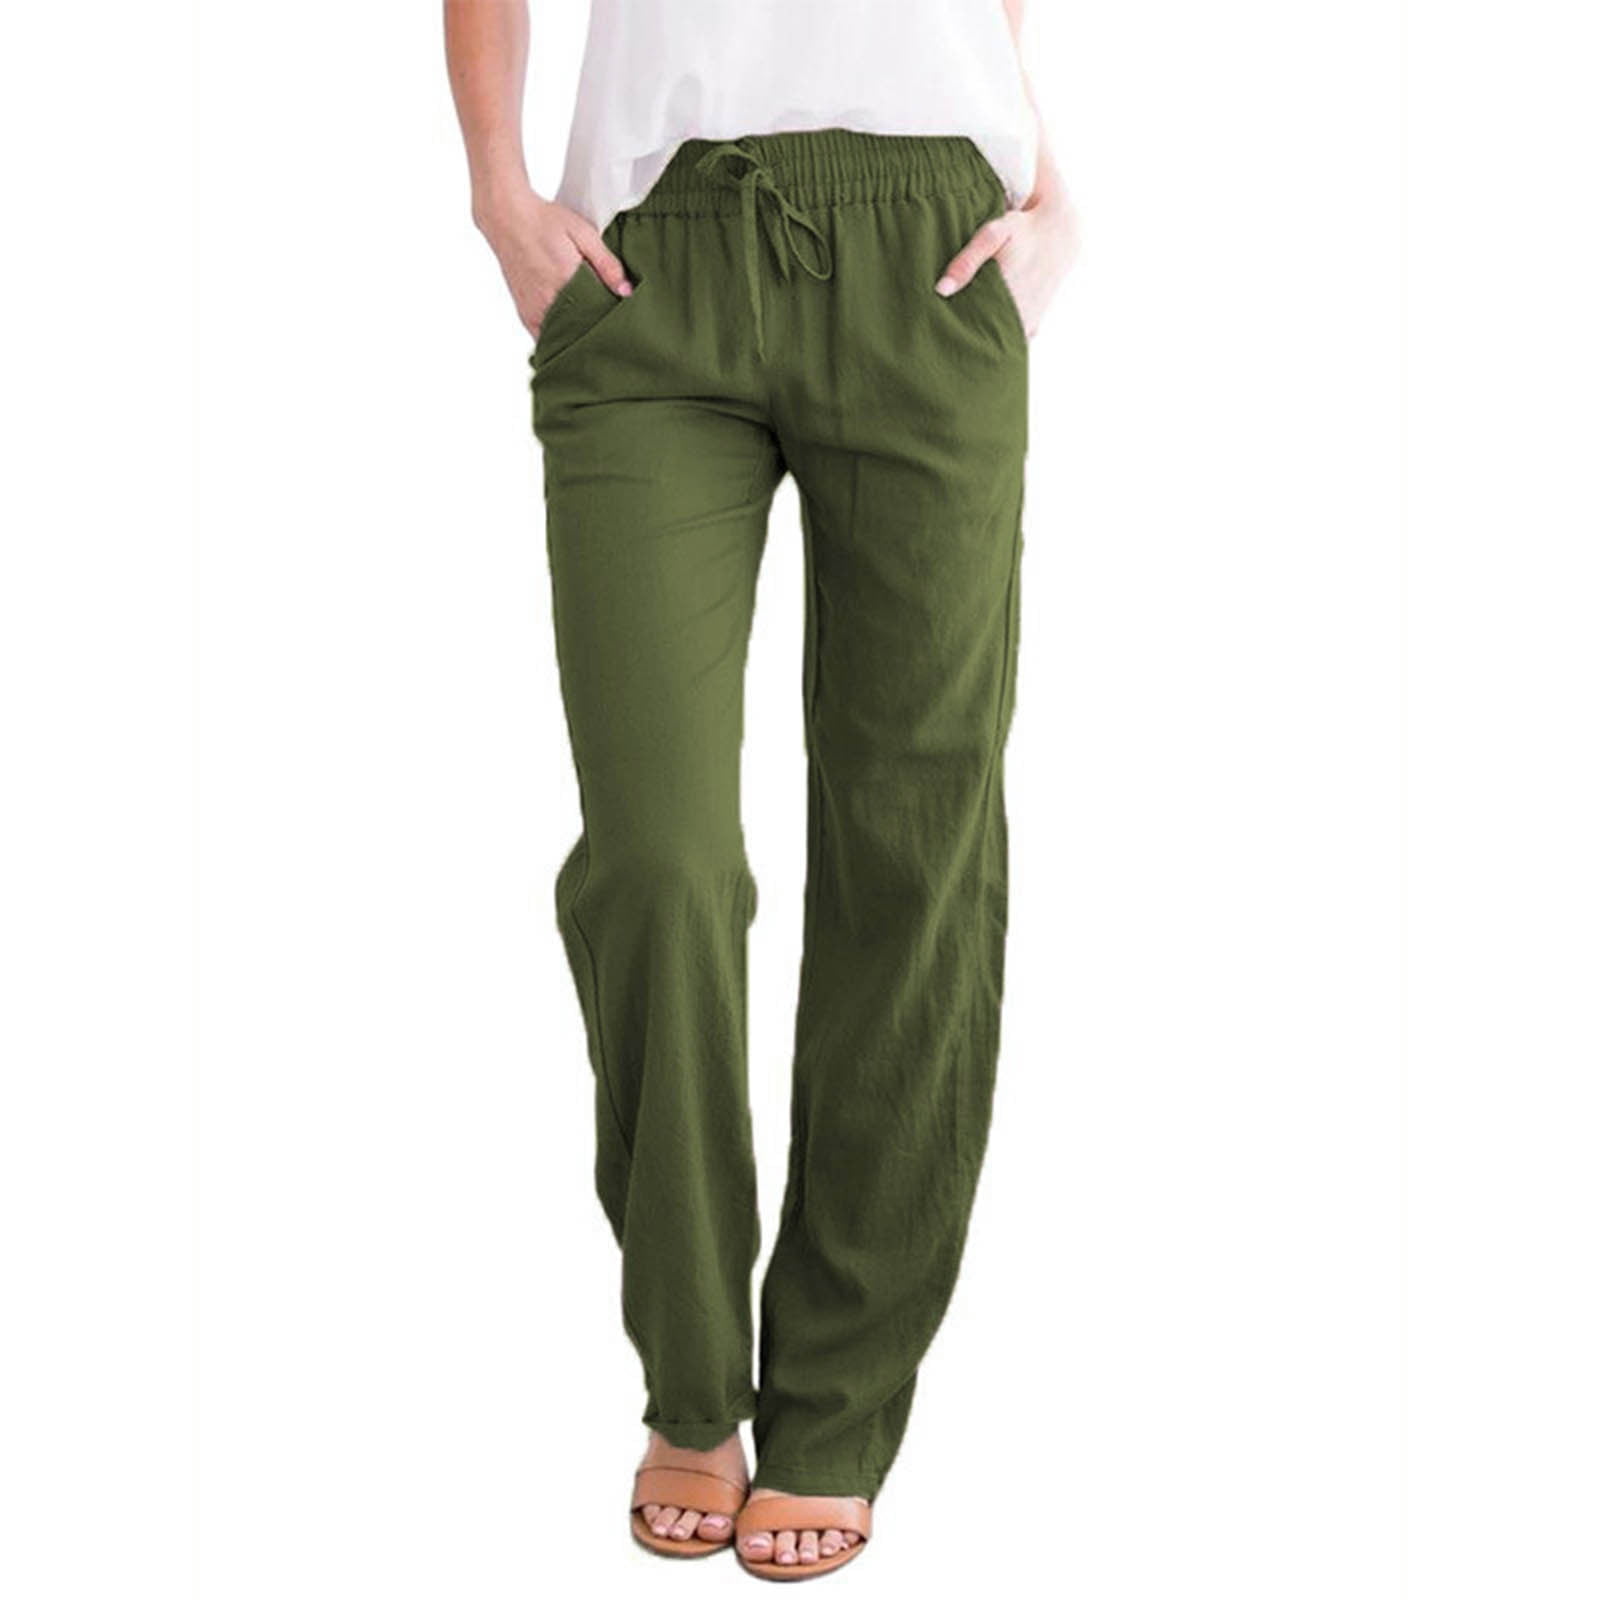 Buy BUIgtTklOP Women's Pants Loose Comfy Cotton Linen Solid Color